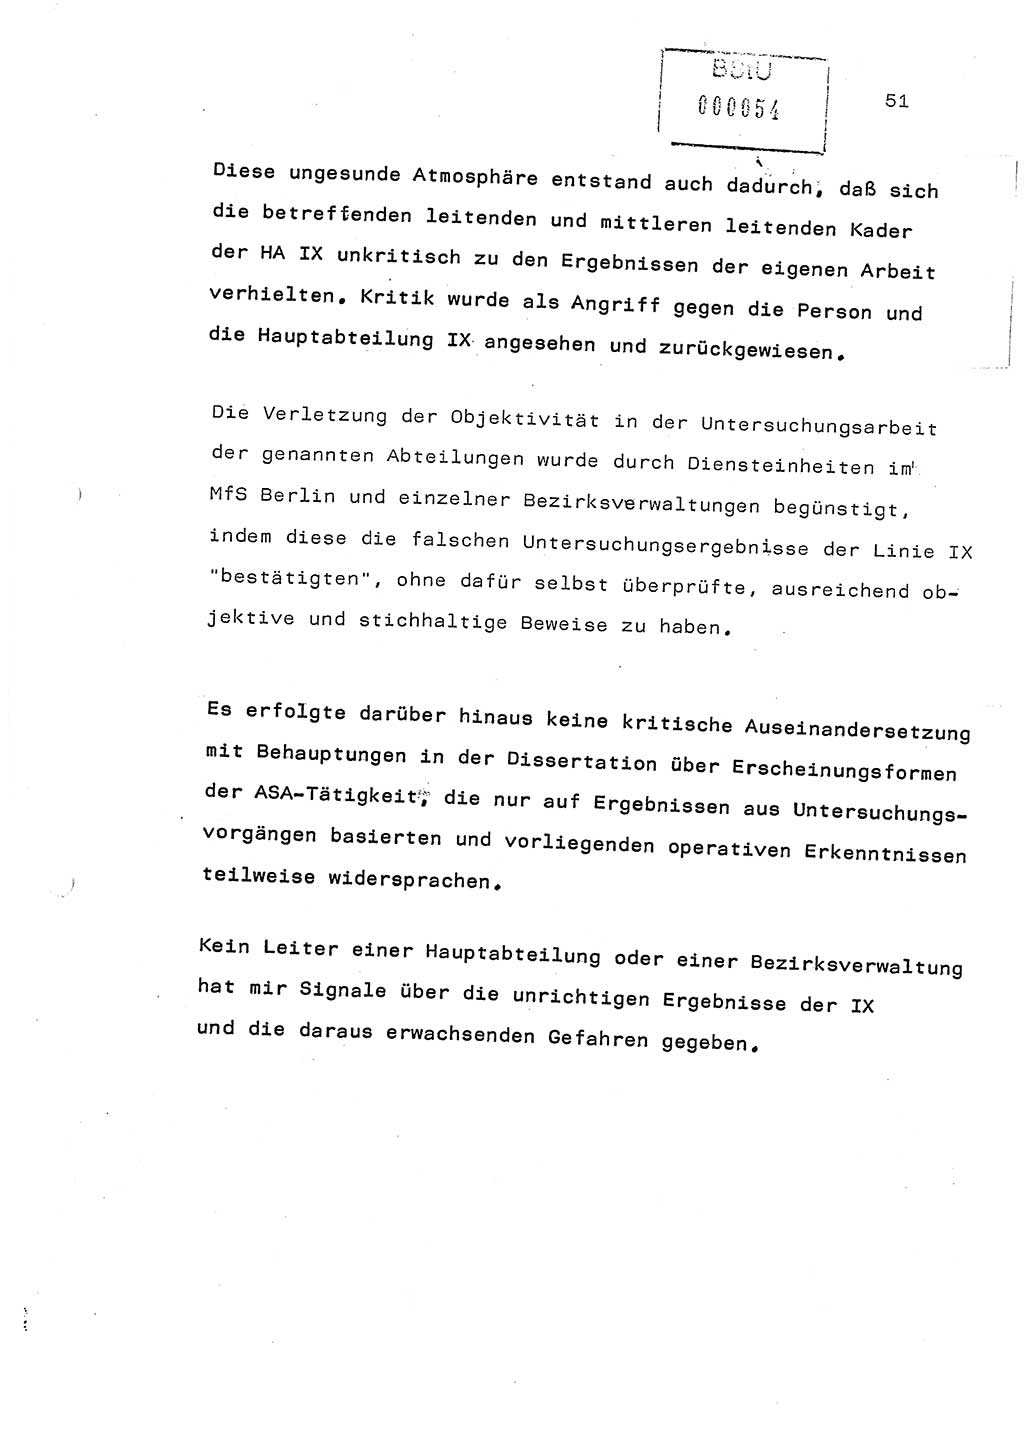 Referat (Generaloberst Erich Mielke) auf der Zentralen Dienstkonferenz am 24.5.1979 [Ministerium für Staatssicherheit (MfS), Deutsche Demokratische Republik (DDR), Der Minister], Berlin 1979, Seite 51 (Ref. DK DDR MfS Min. /79 1979, S. 51)